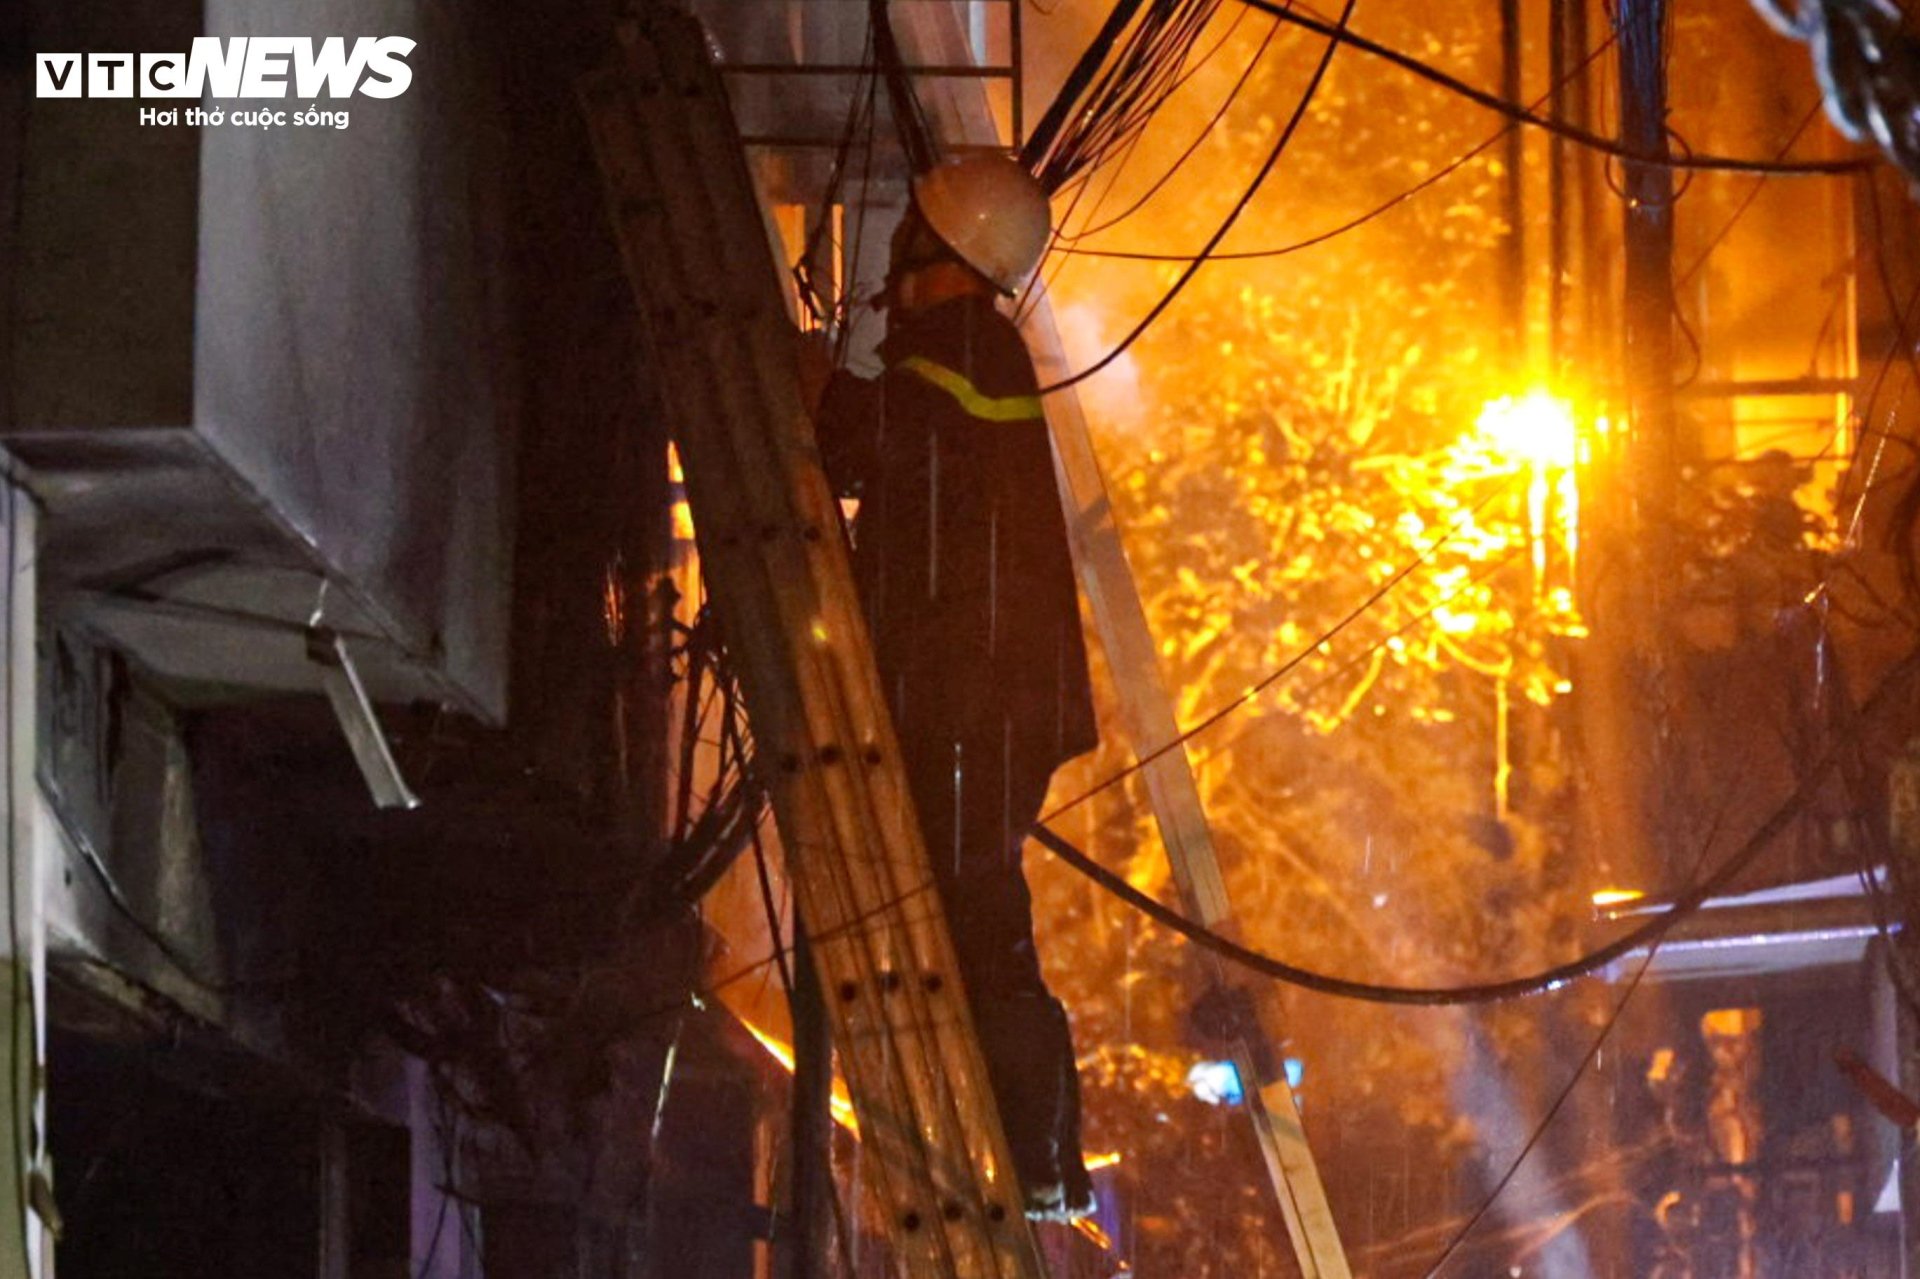 Hiện trường vụ cháy chung cư mini ở Hà Nội trong đêm, nhiều người ngất xỉu - Ảnh 4.